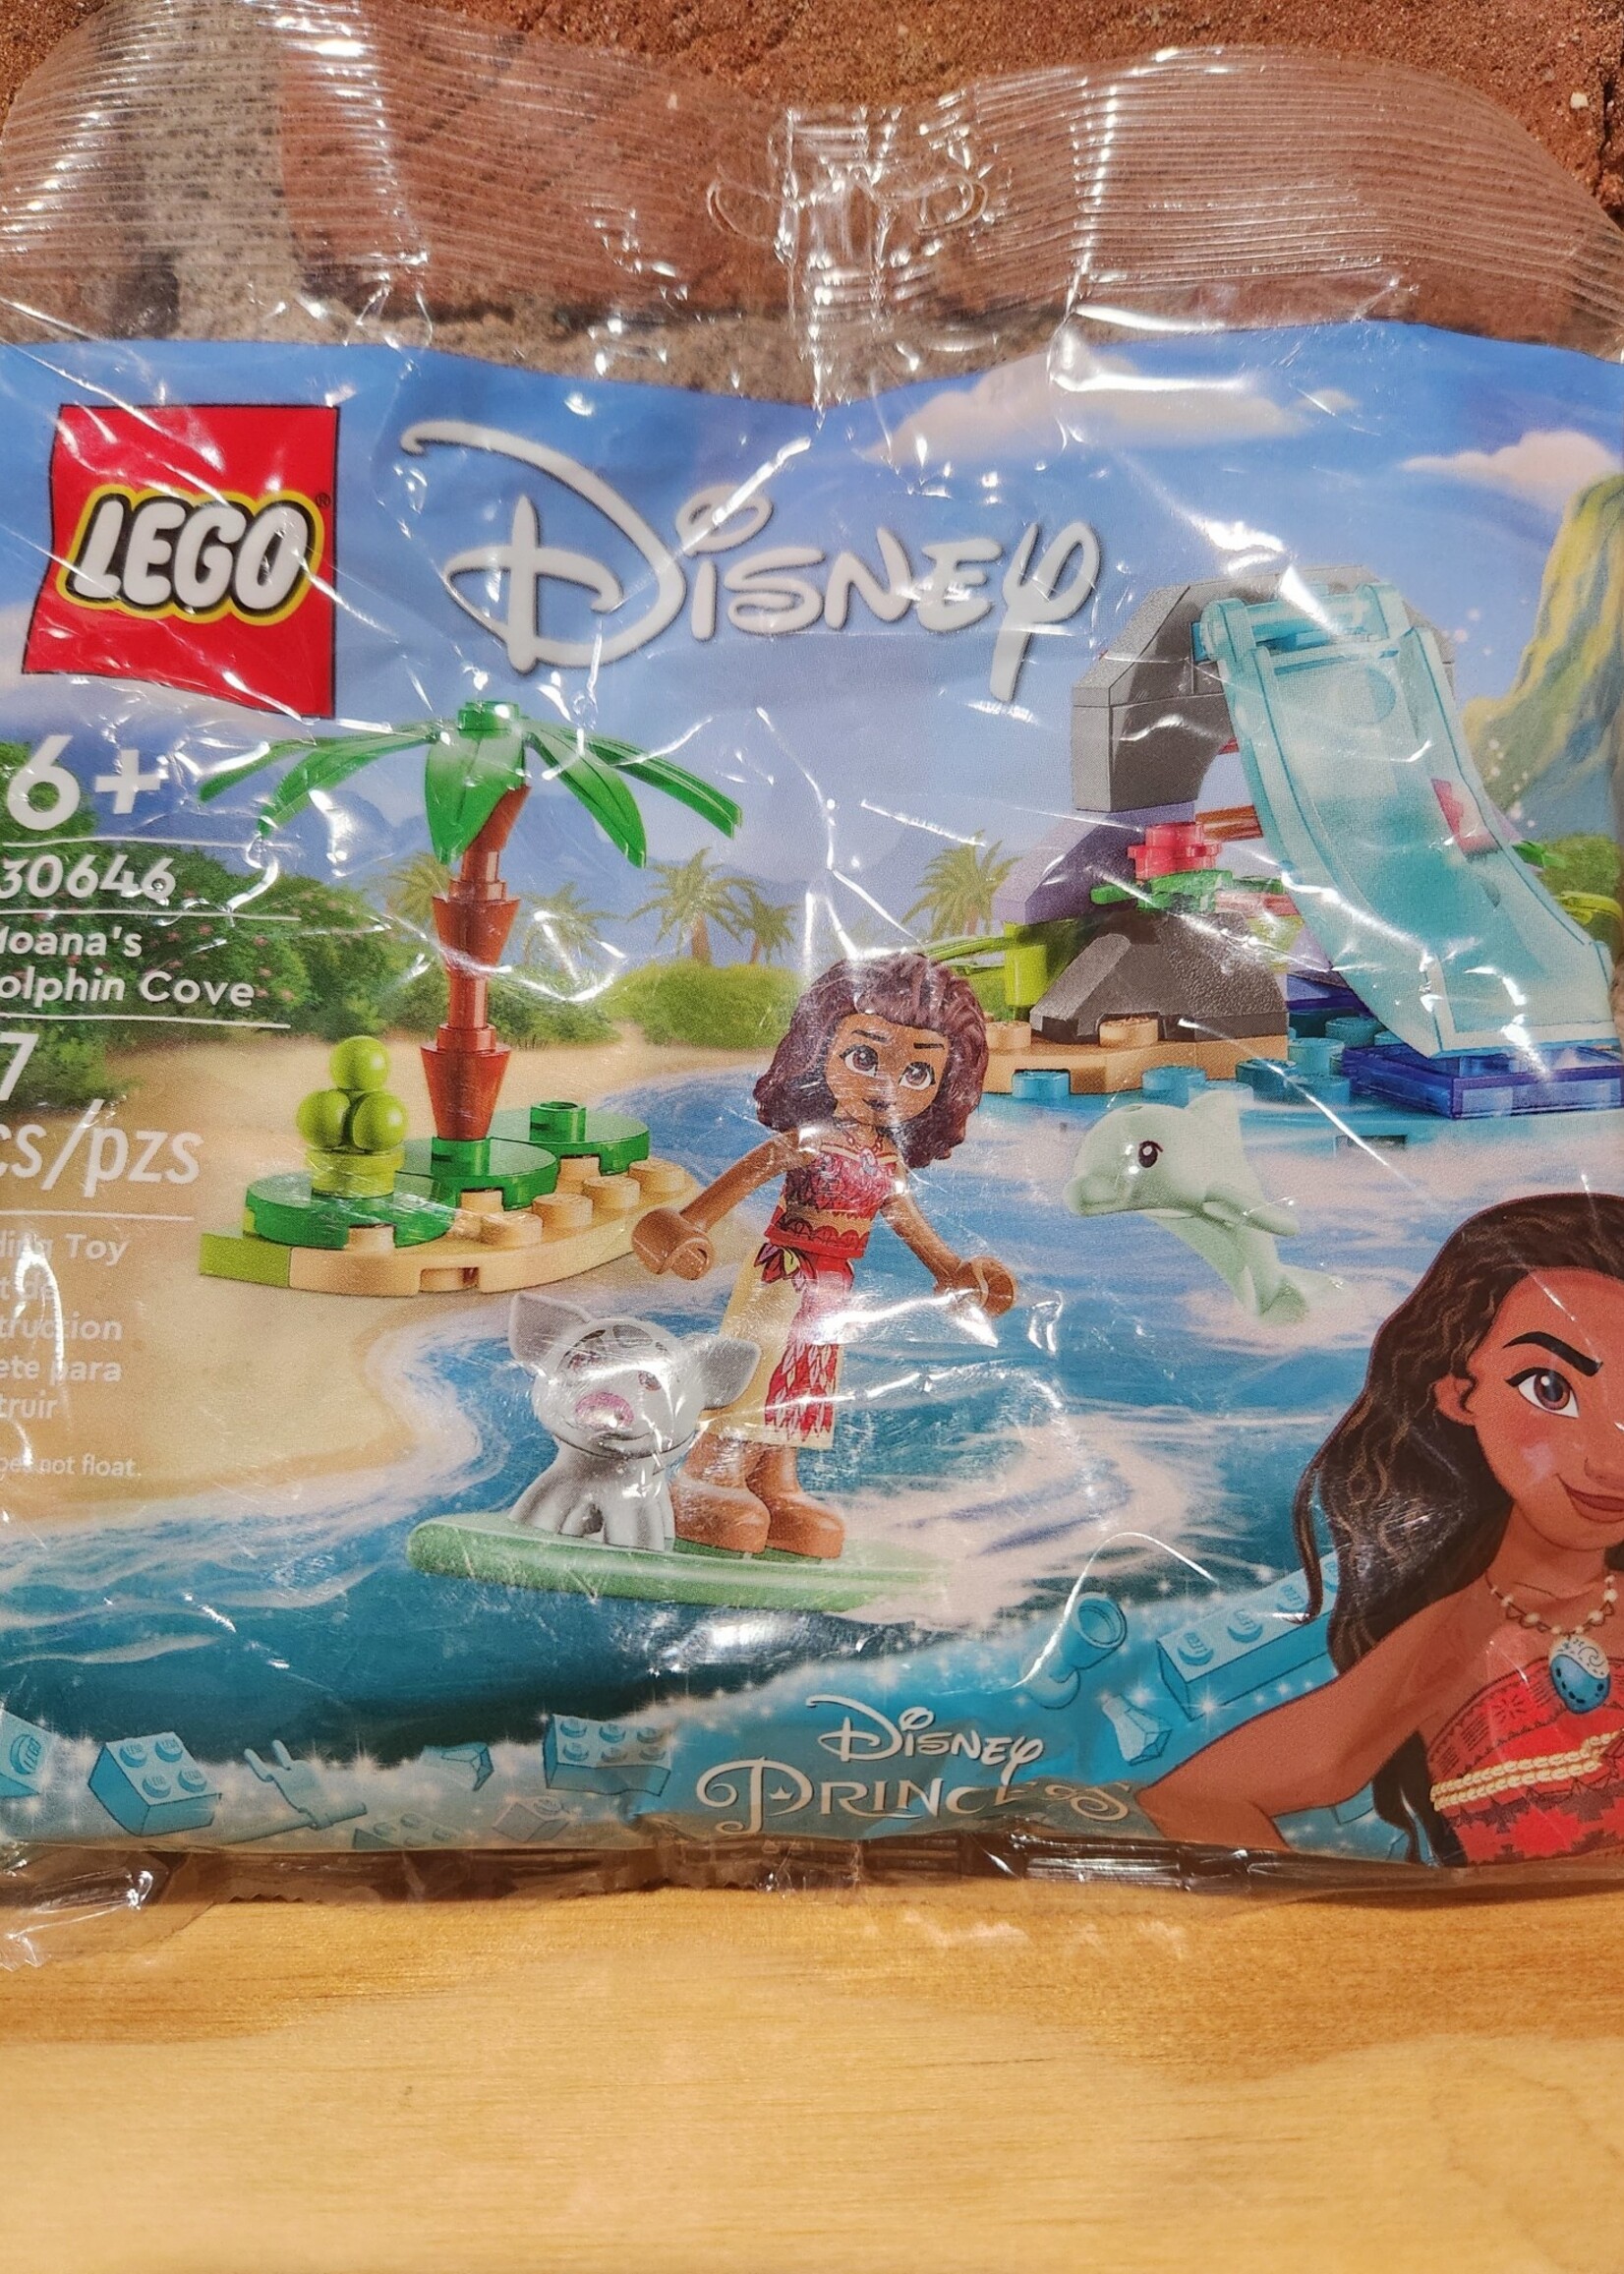 Lego Disney - Moana’s Dolphin Cove